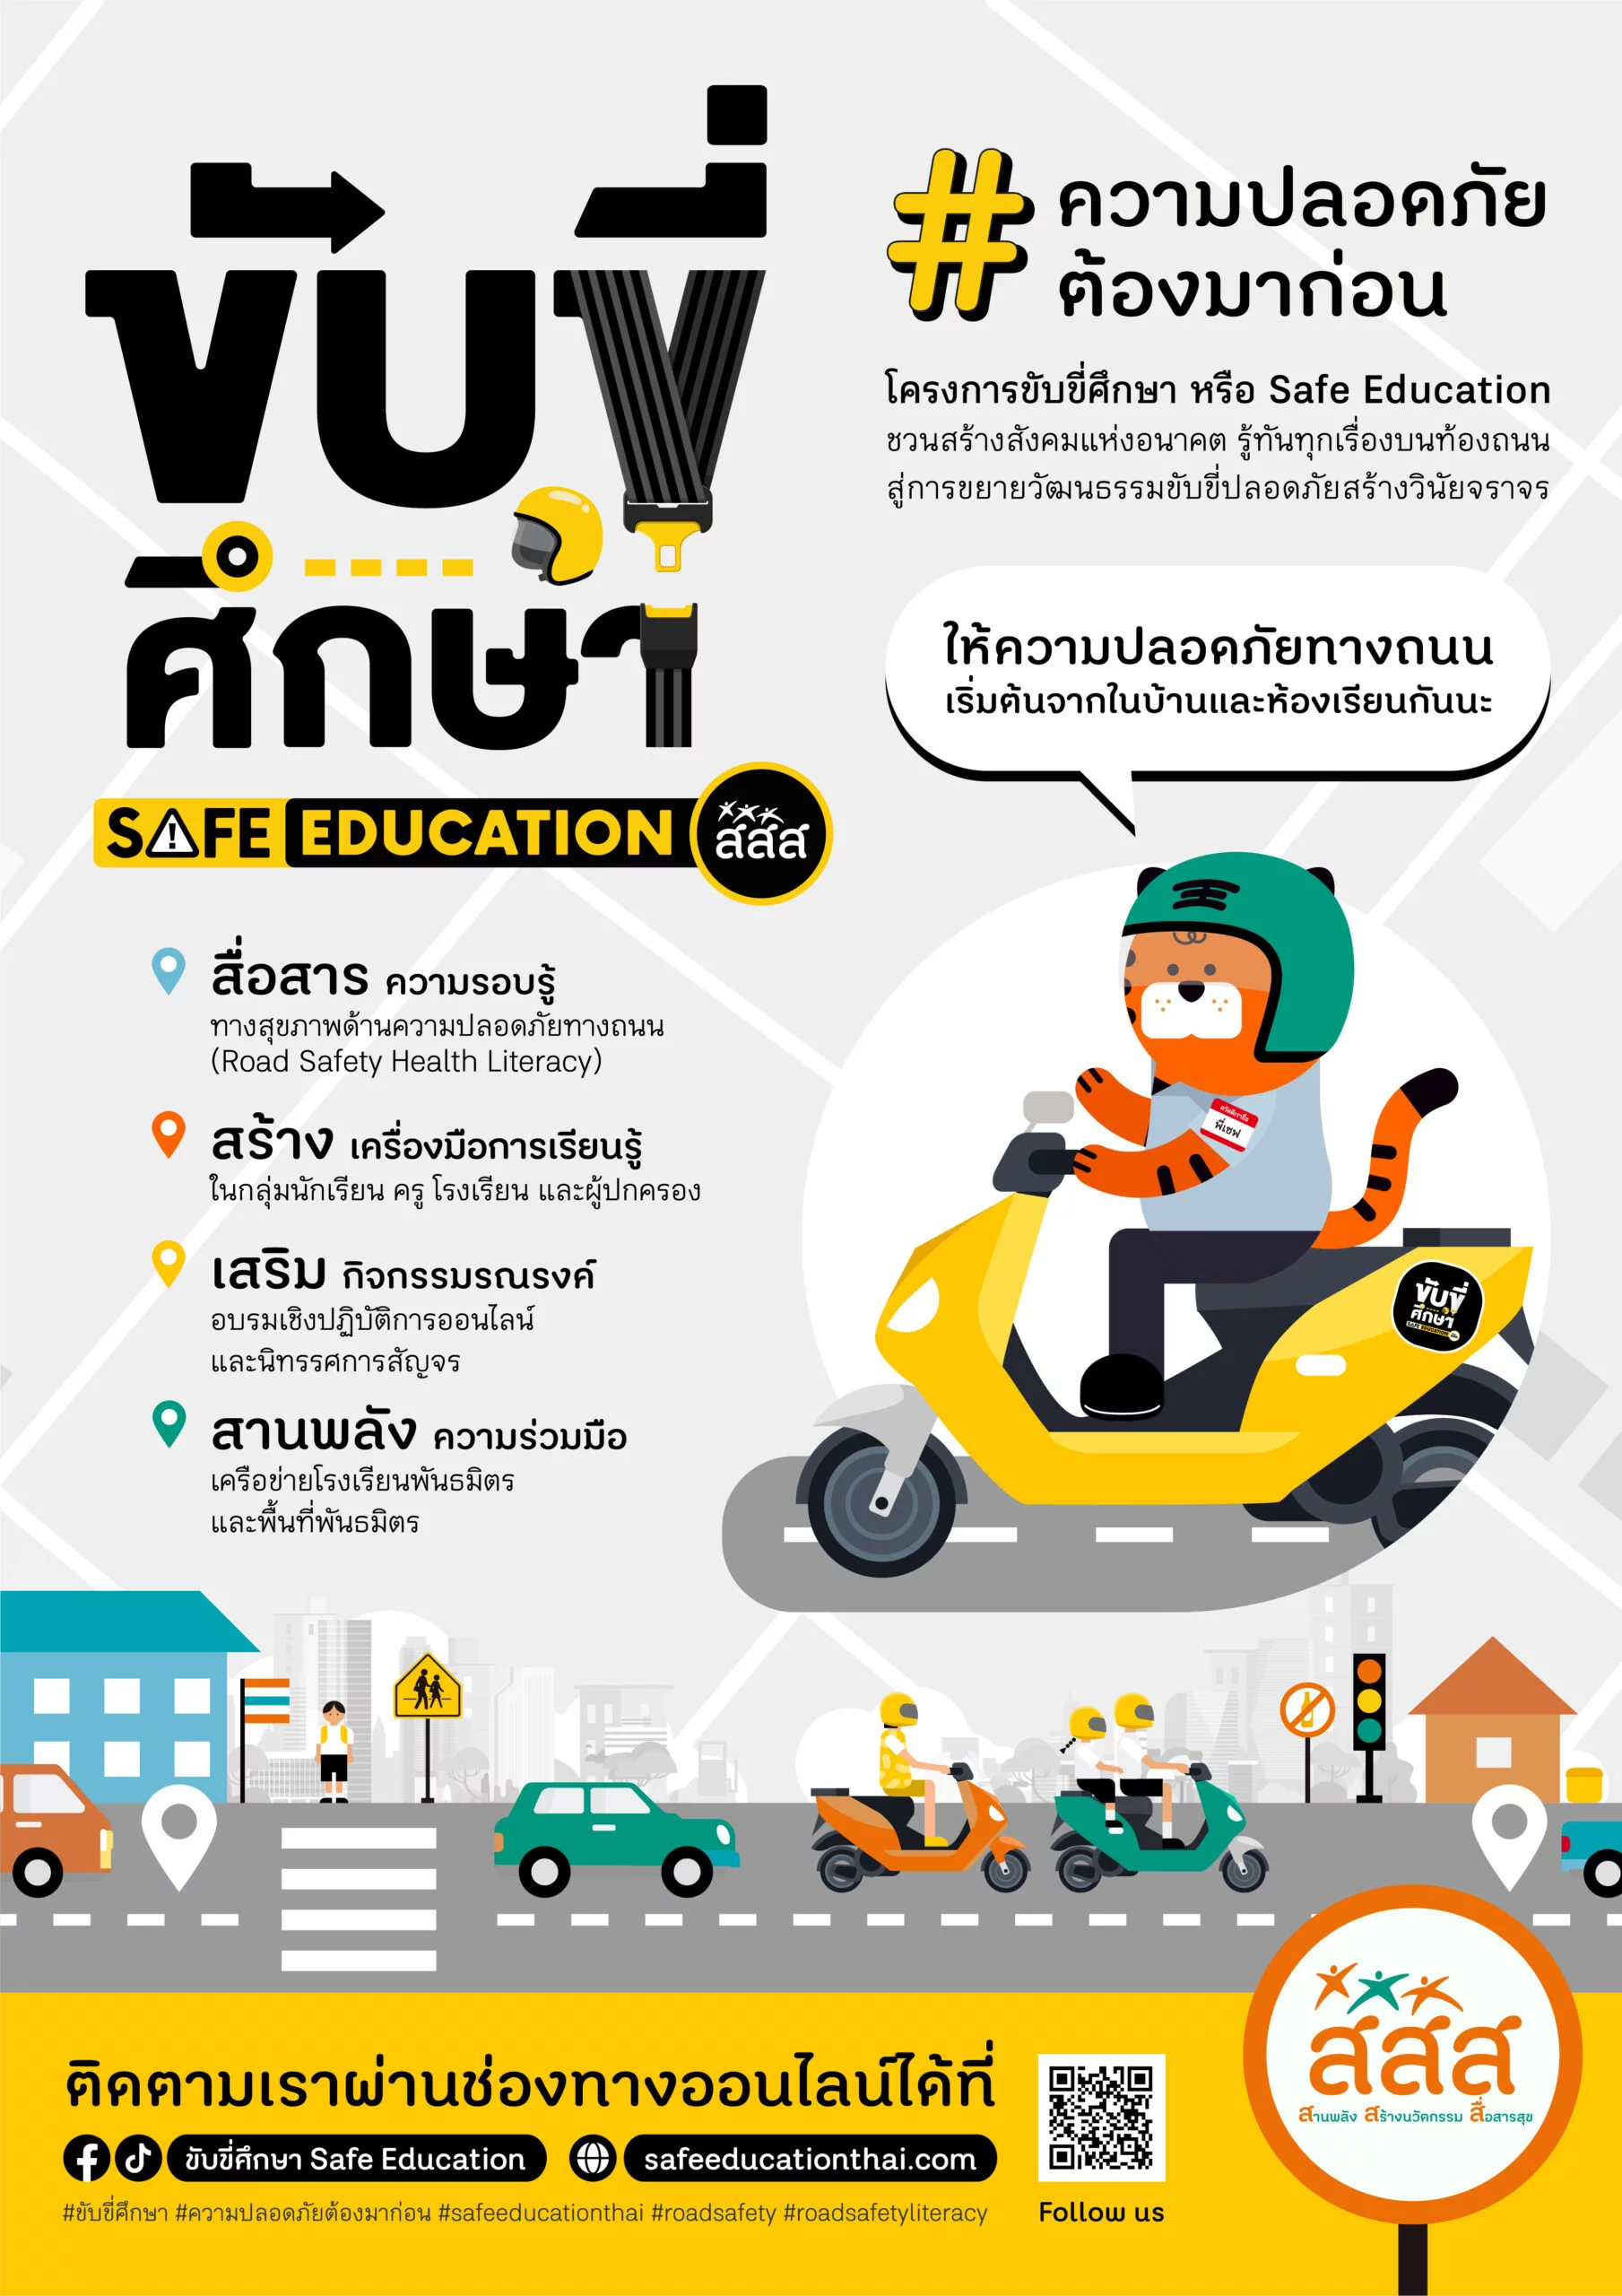 ขับขี่ศึกษา (SAFE EDUCATION)